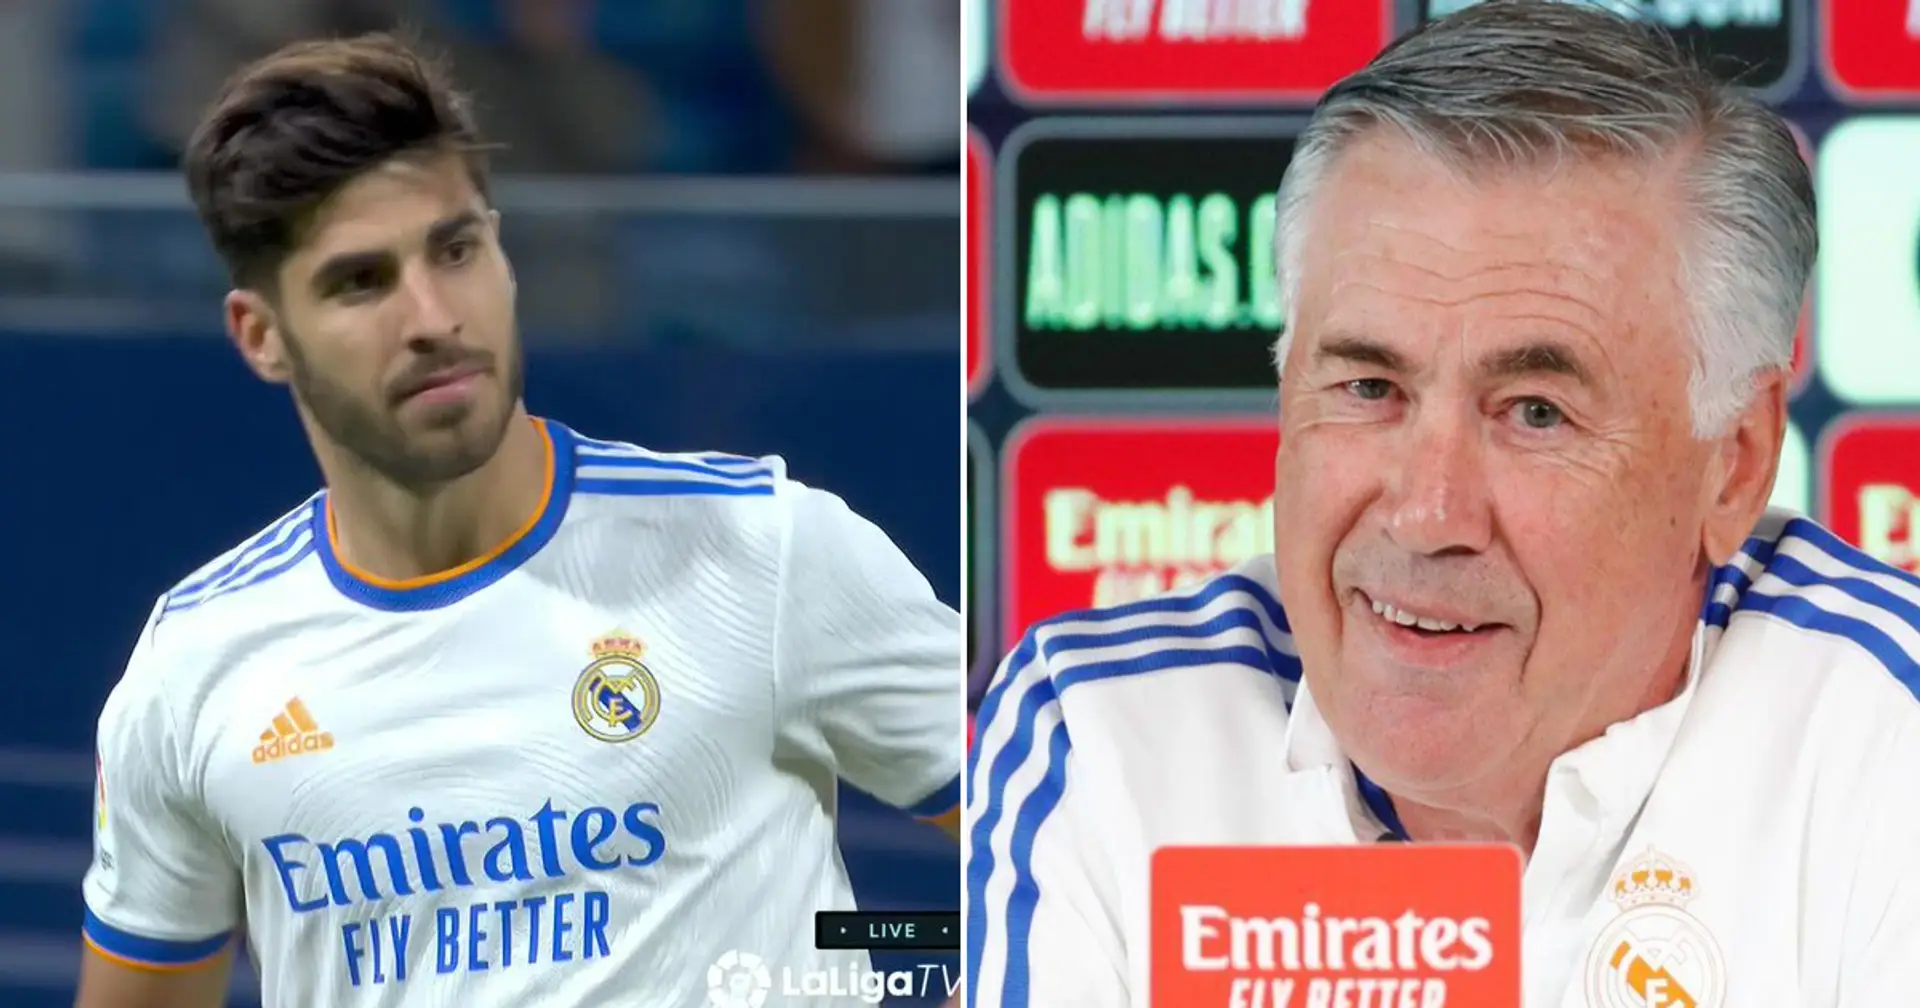 Las 5 mejores fotos de la semana del Real Madrid: Asensio con balón de partido, risa de Ancelotti y 3 más